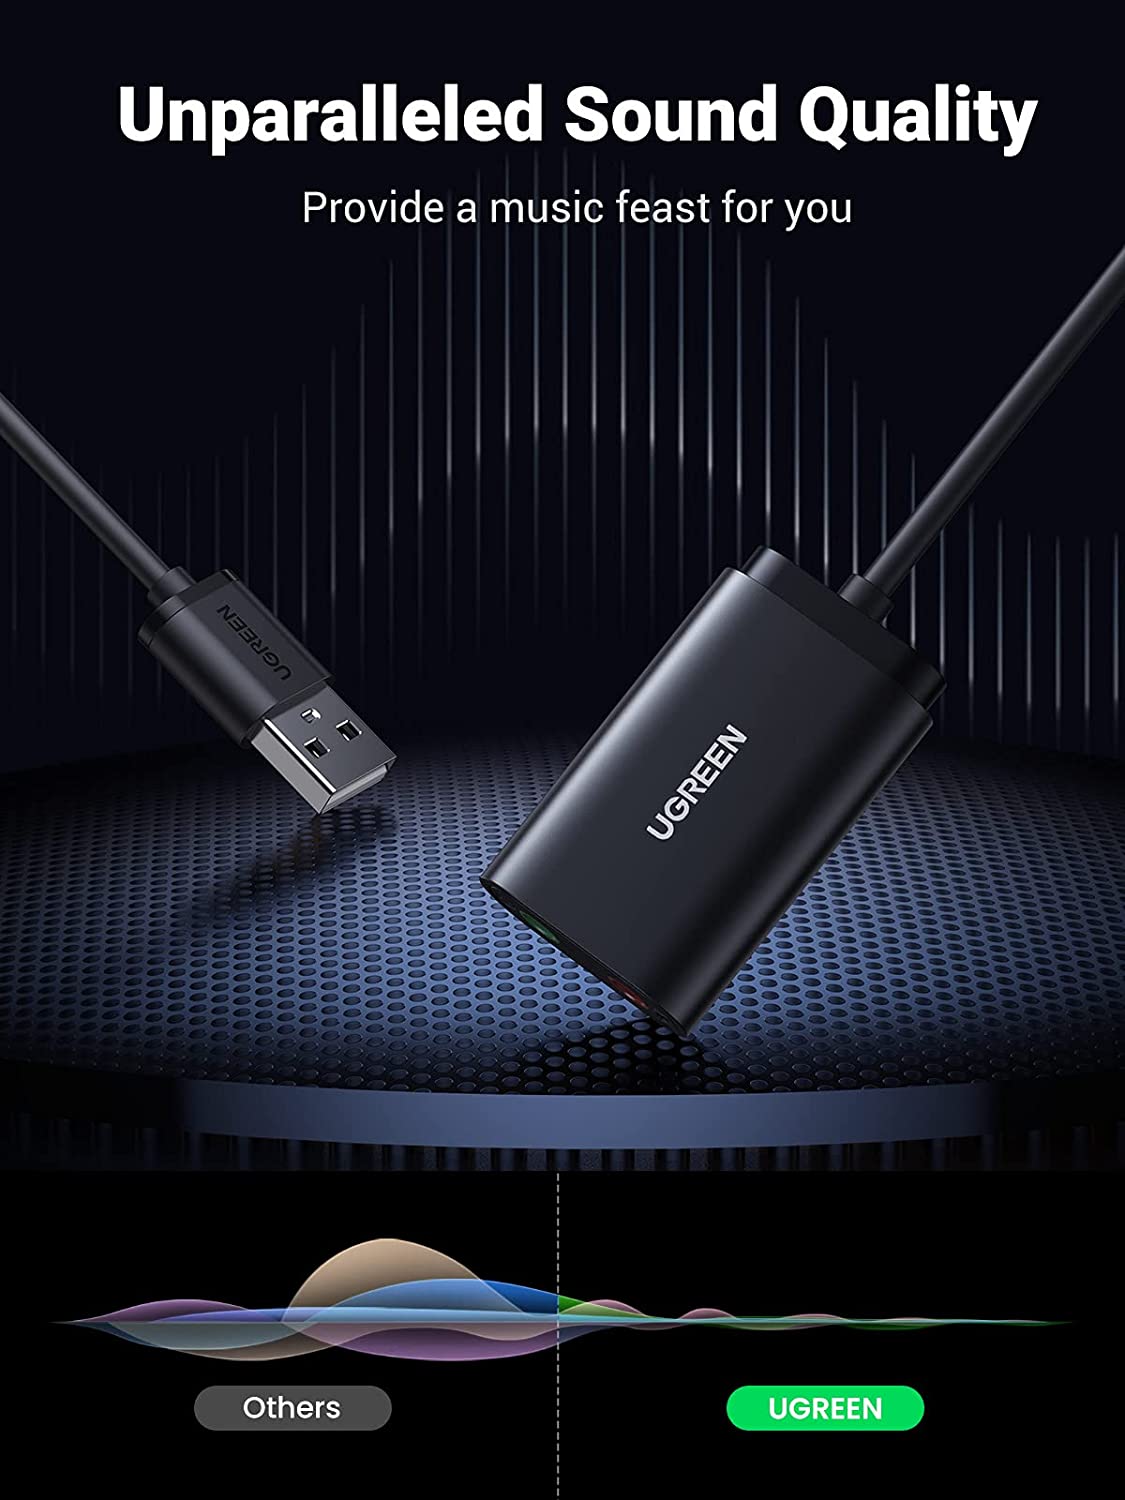 30724 Звуковая карта внешня UGREEN US205, USB to 2 AUX 3.5mm (микрофонный вход + аудиовыход), с проводом 15cm, цвет: черный от prem.by 